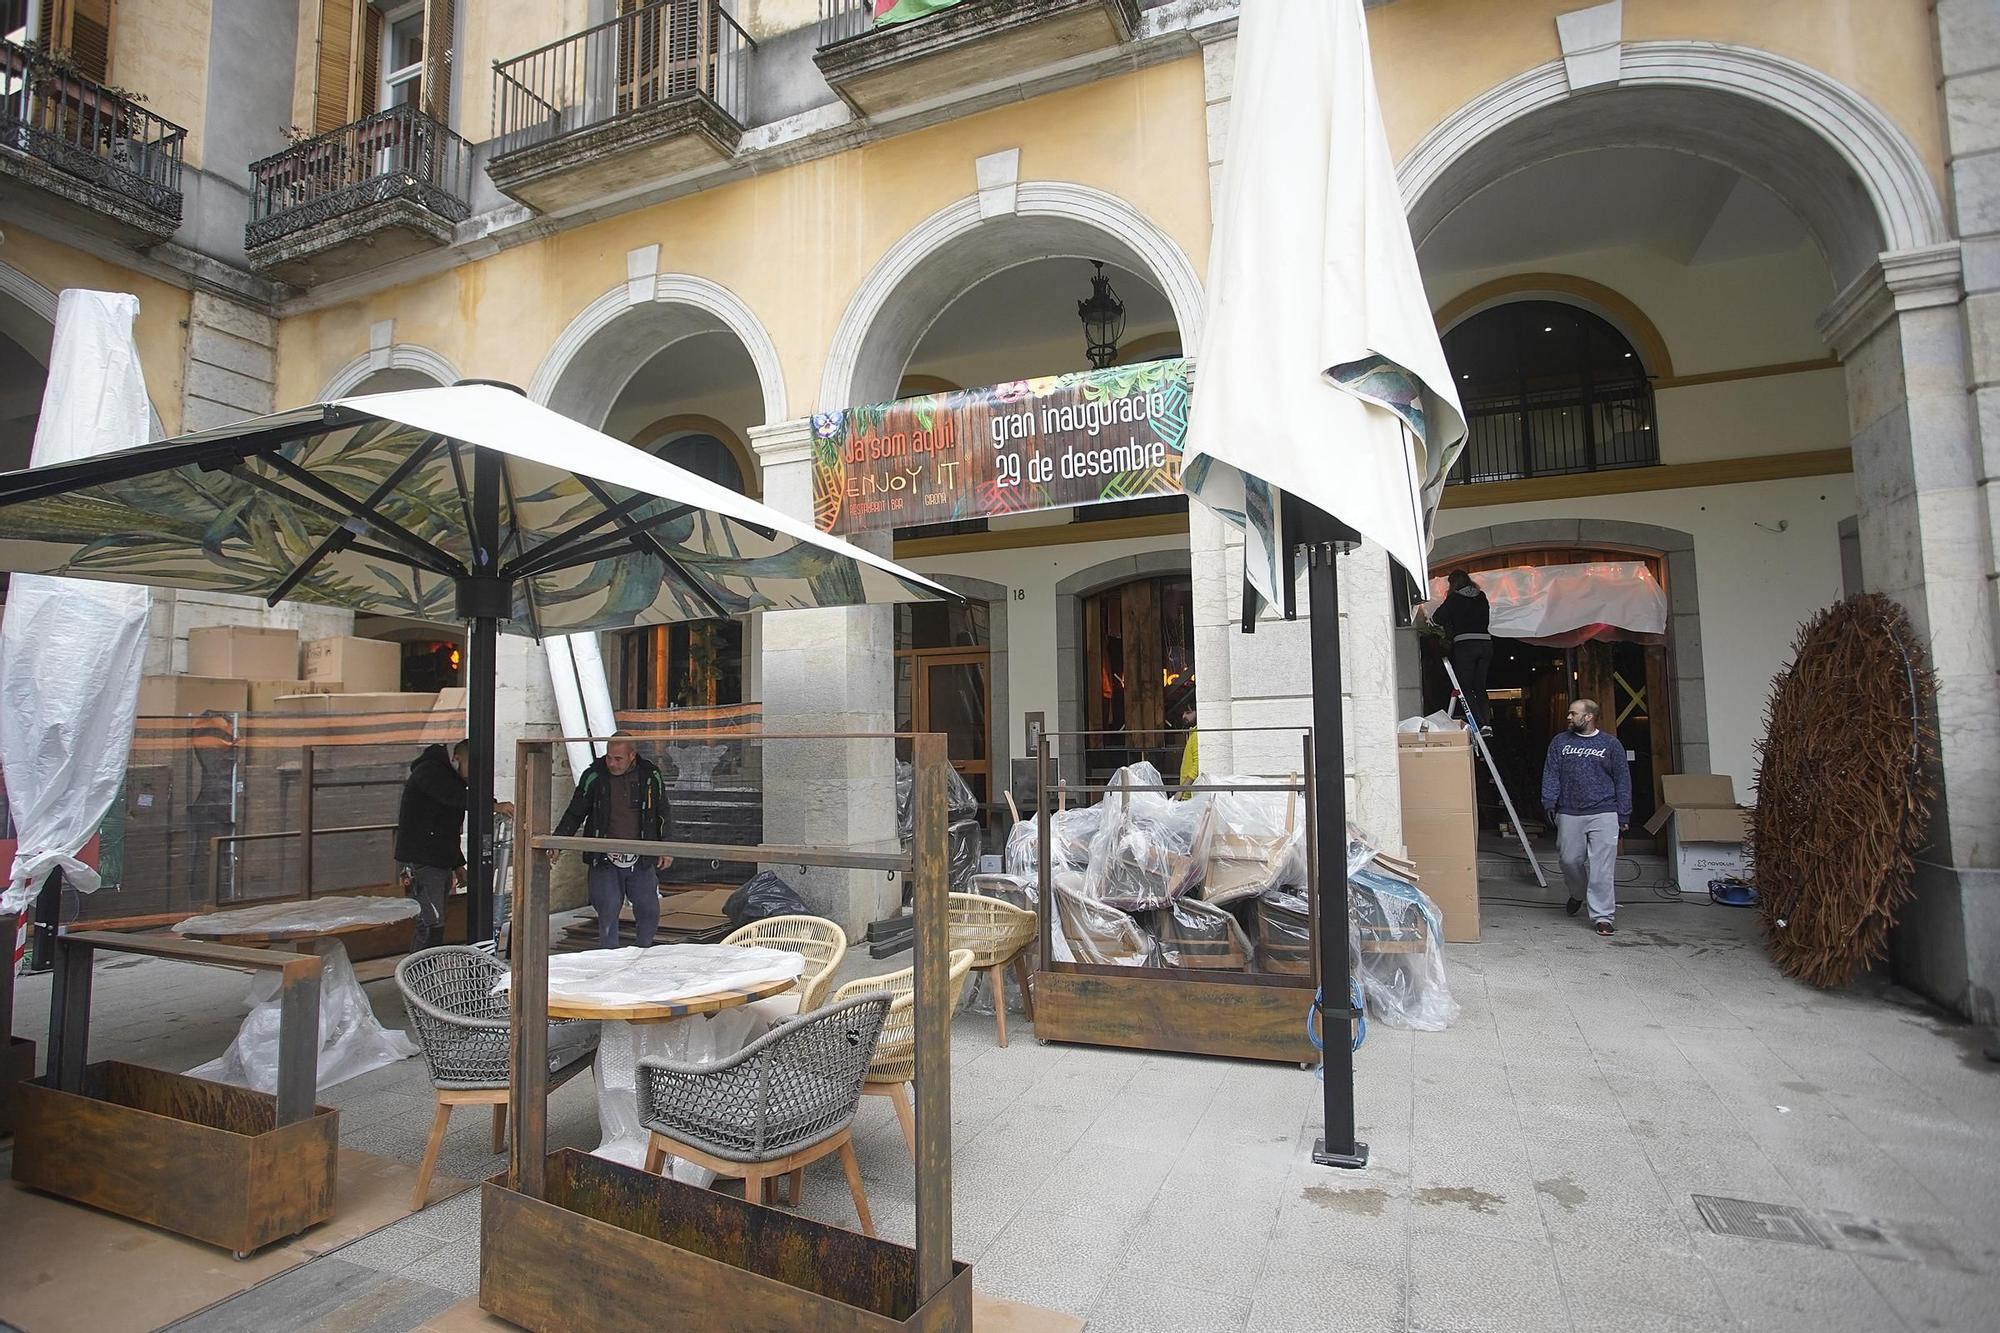 Últims retocs al restautant Enjoy It de Girona